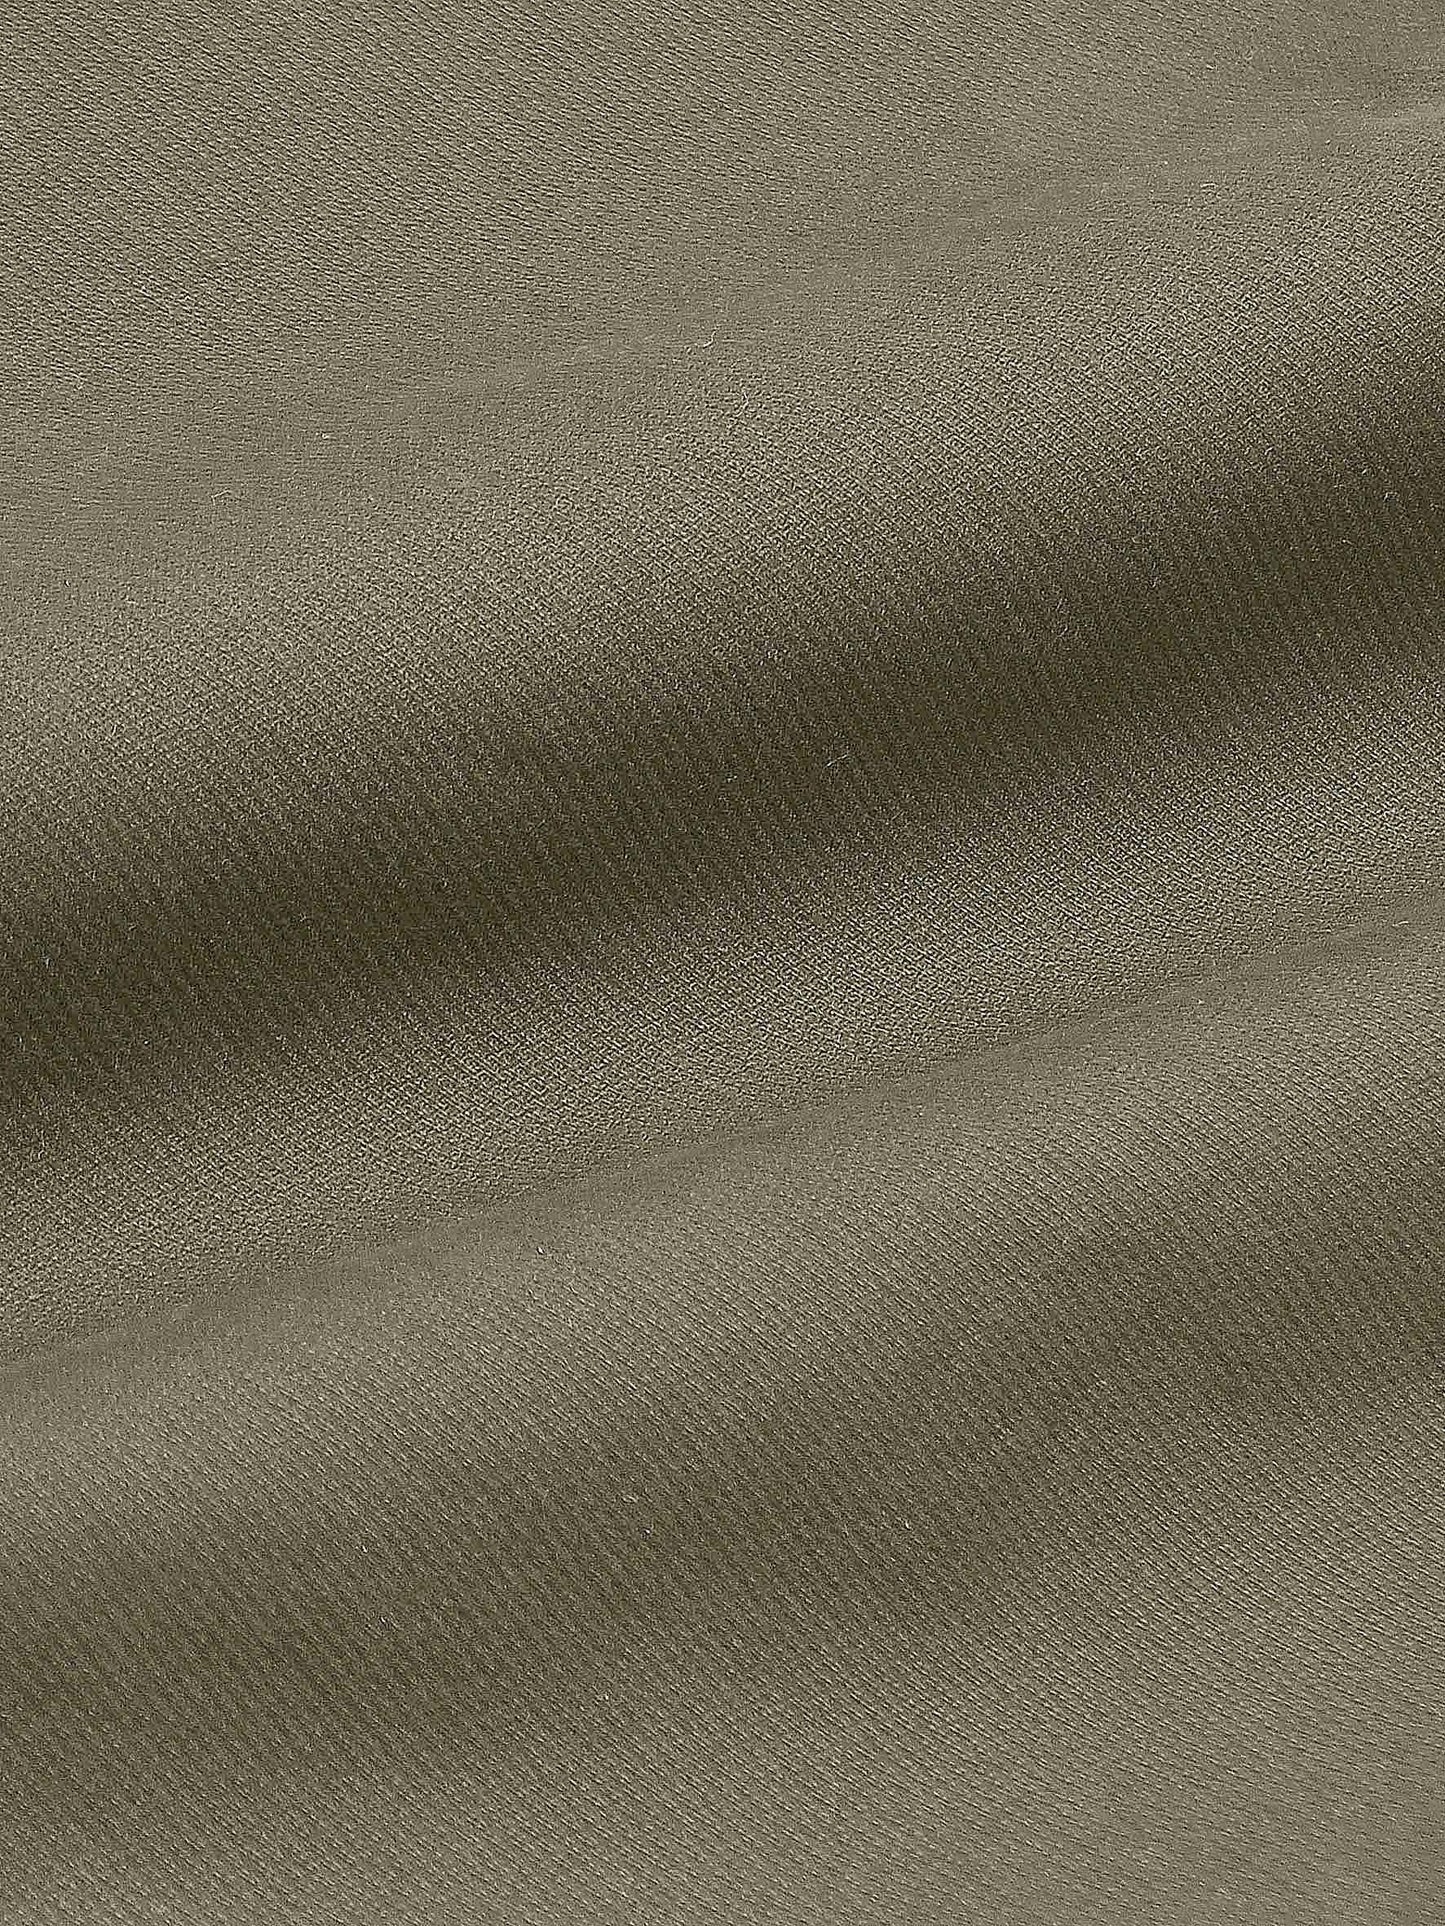 Premium R/L Cotton Chinos - Lite Brownish